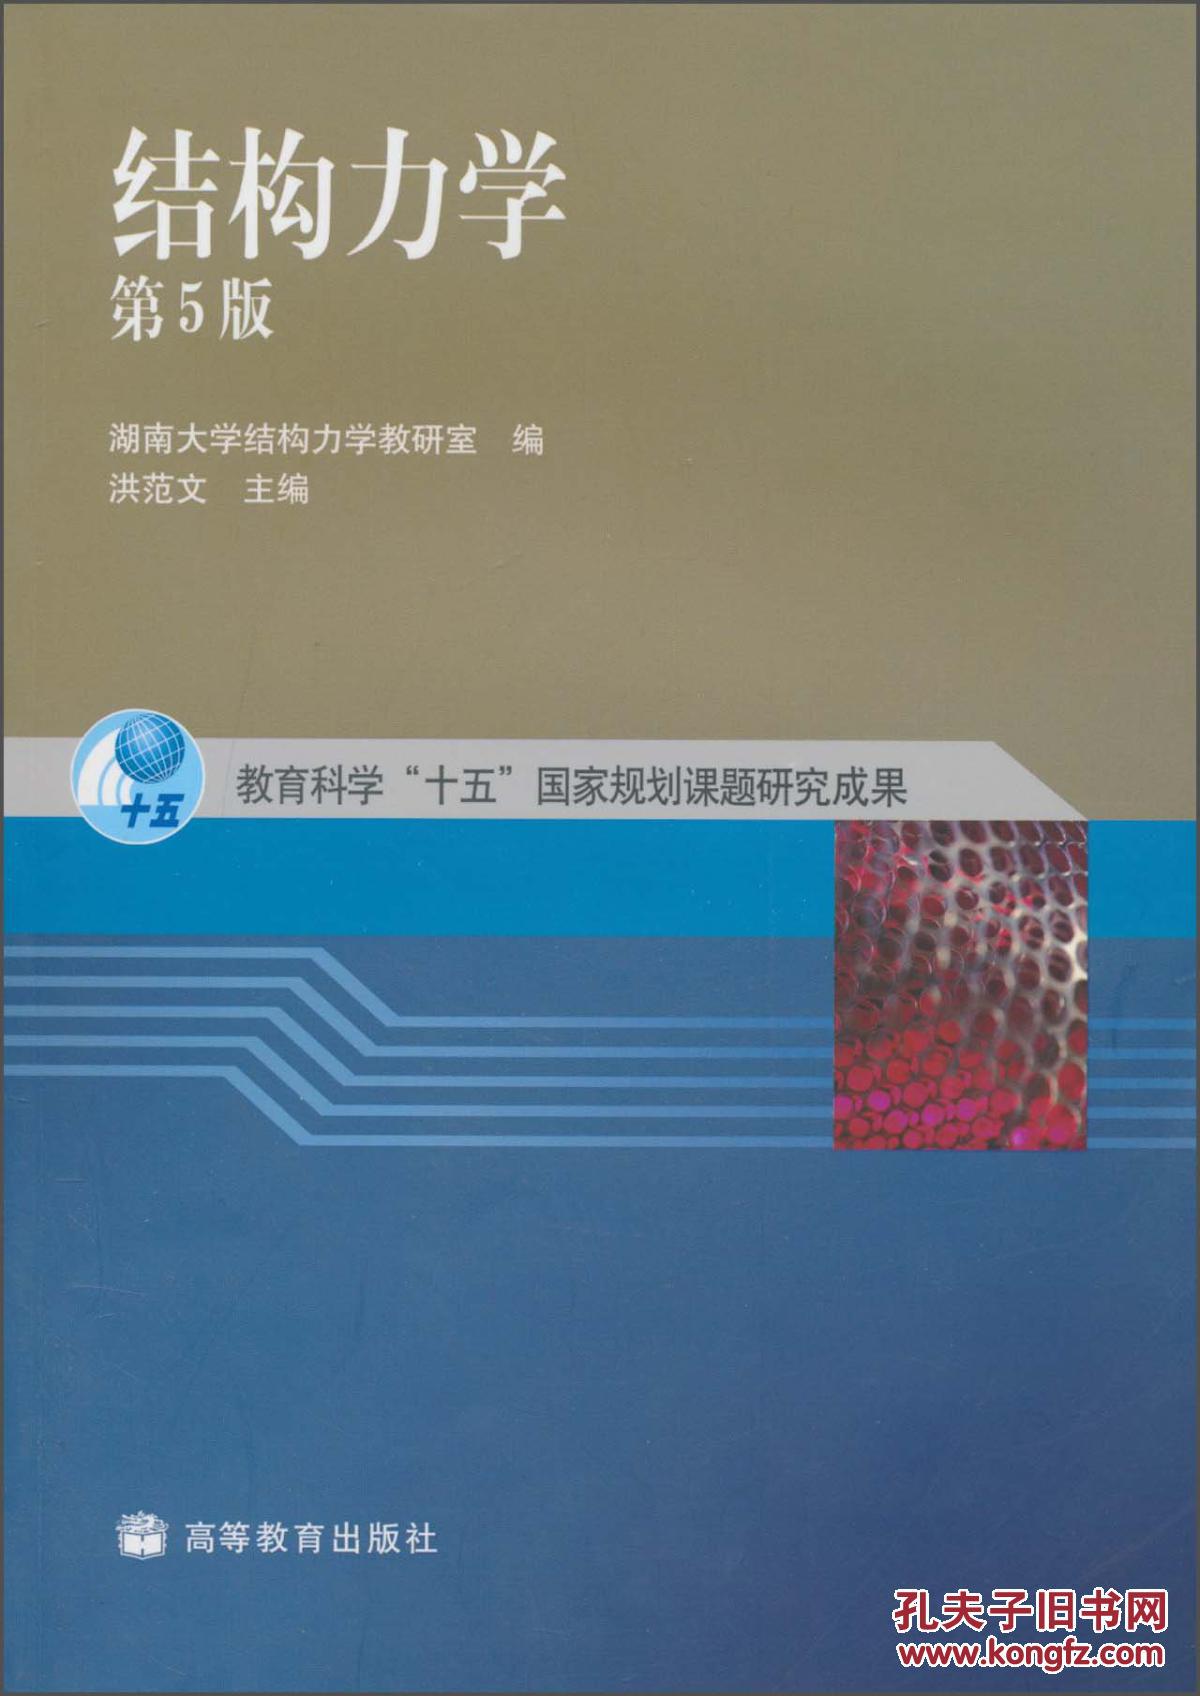 结构力学(第5版)洪范文, 湖南大学结构力学教研